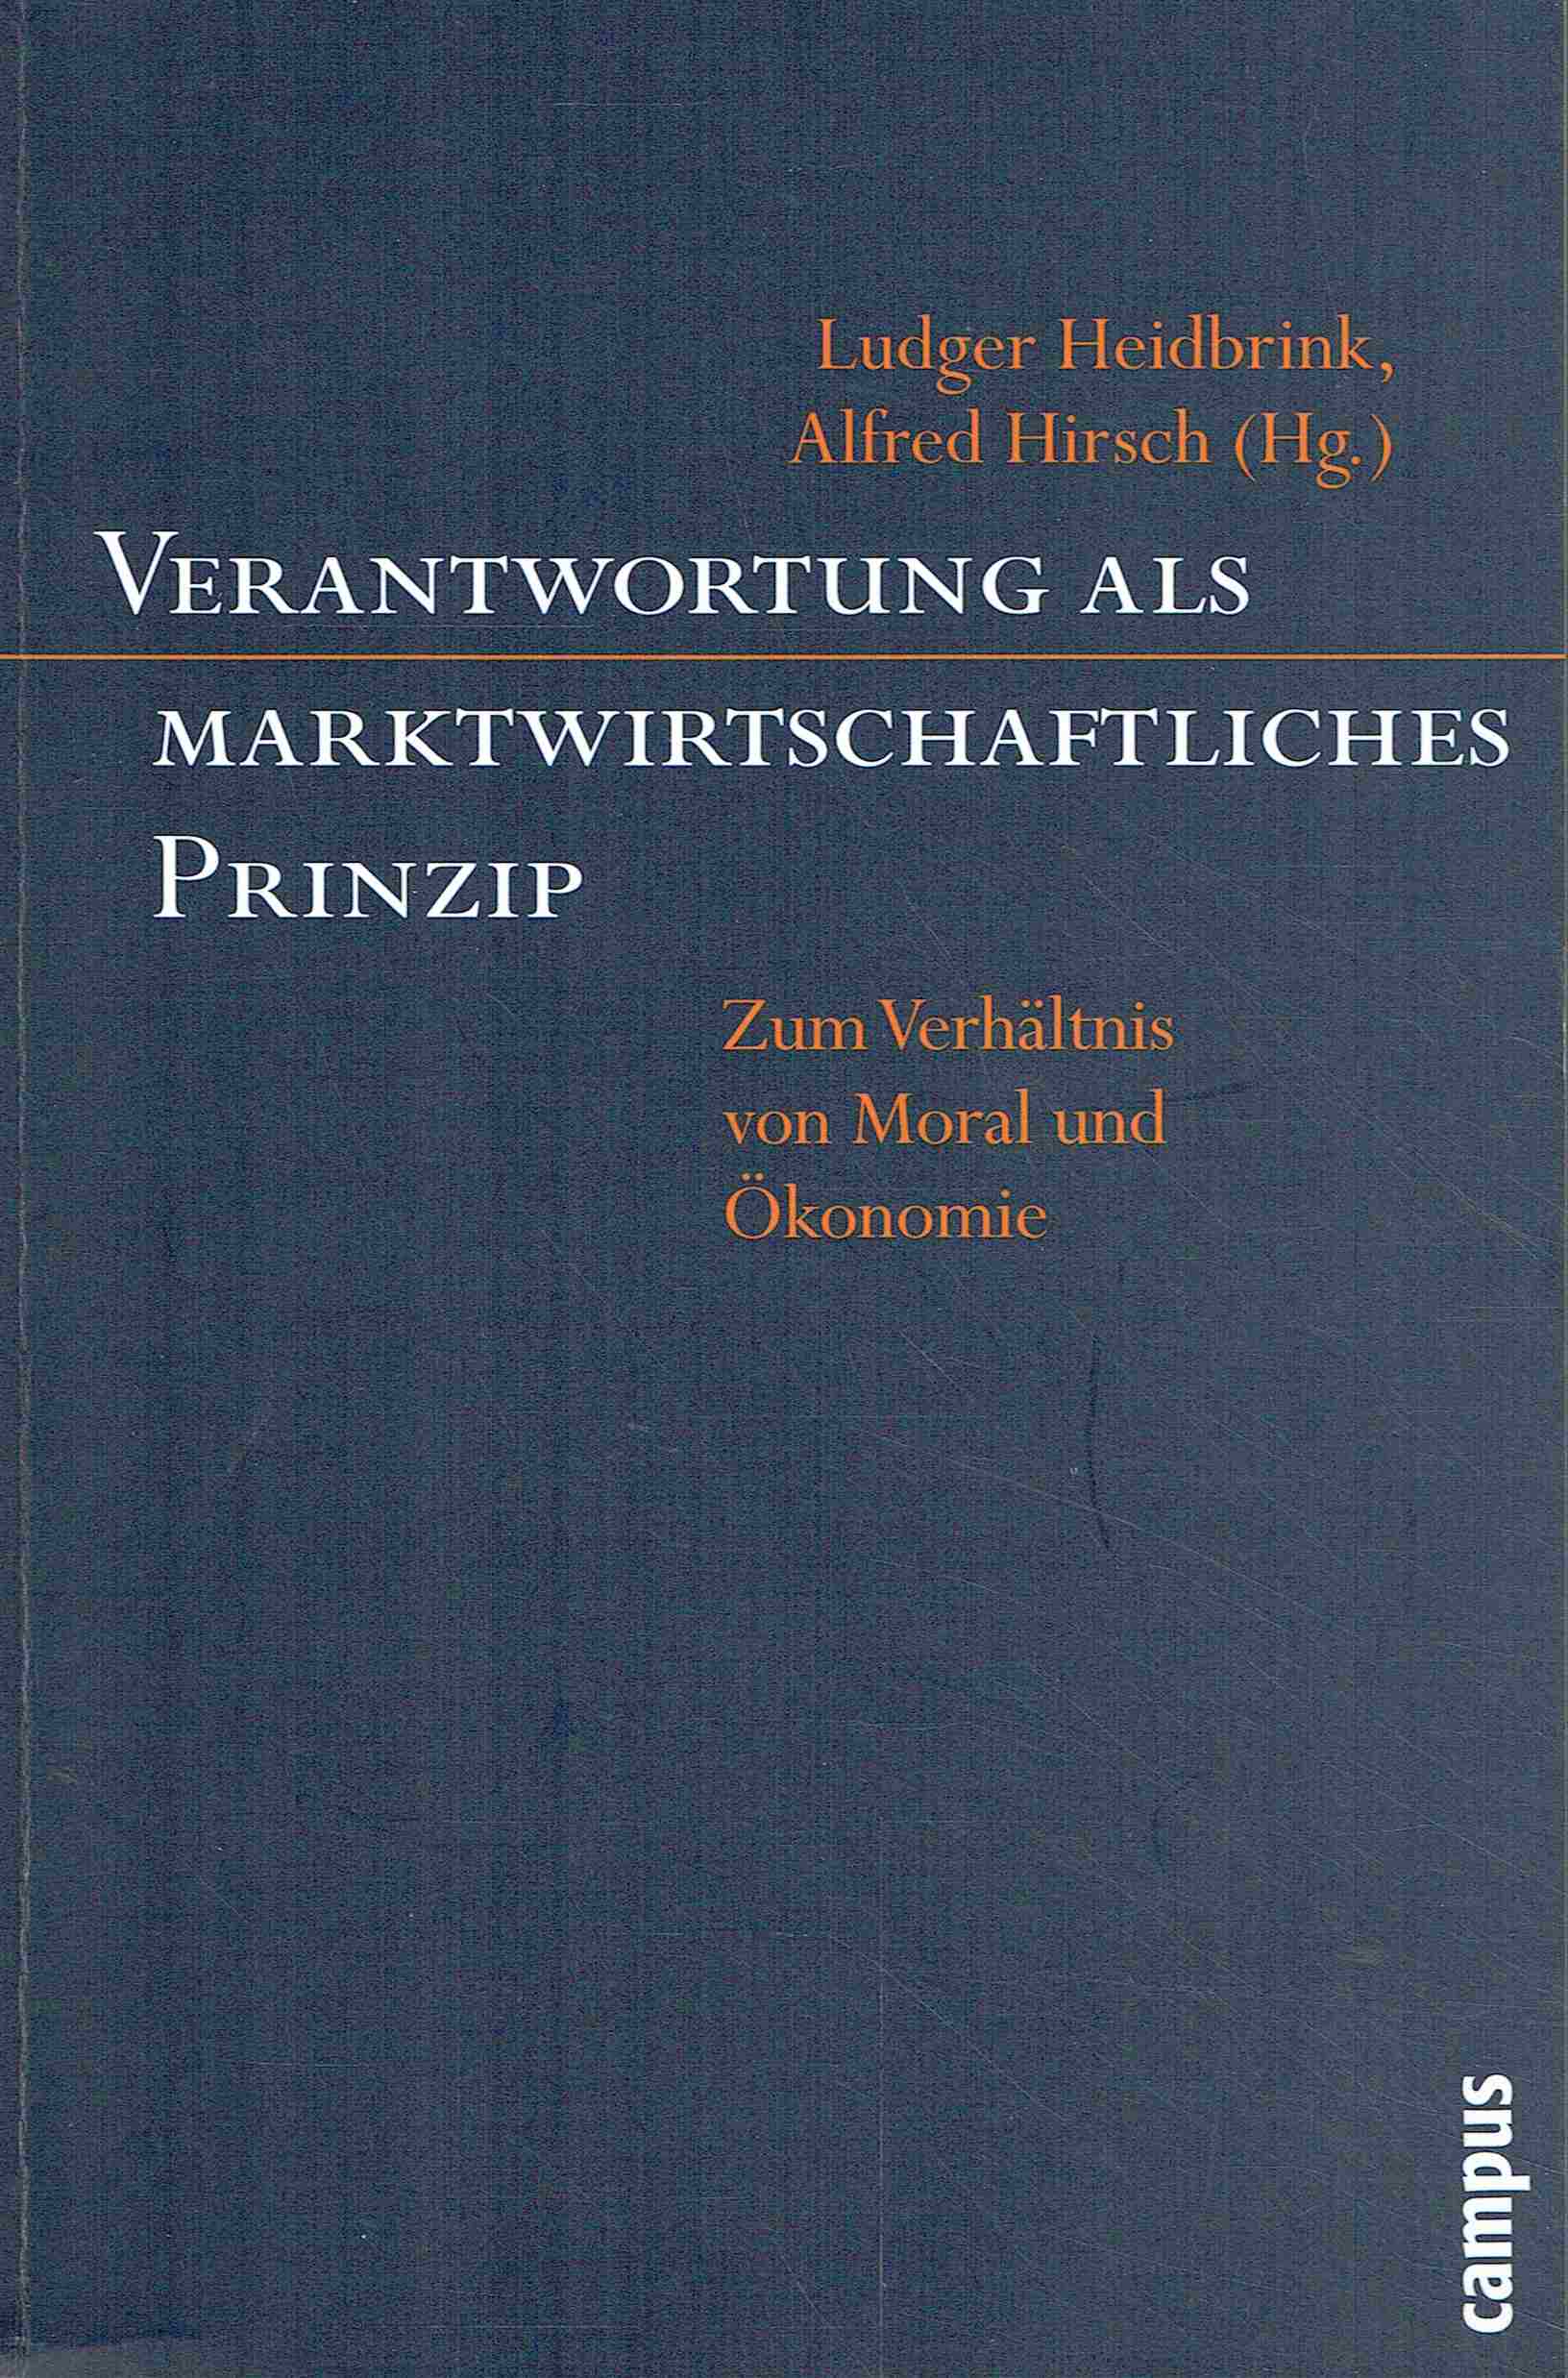 Verantwortung als marktwirtschaftliches Prinzip: Zum Verhältnis von Moral und Ökonomie. - Heidbrink, Ludger, Hirsch, Alfred